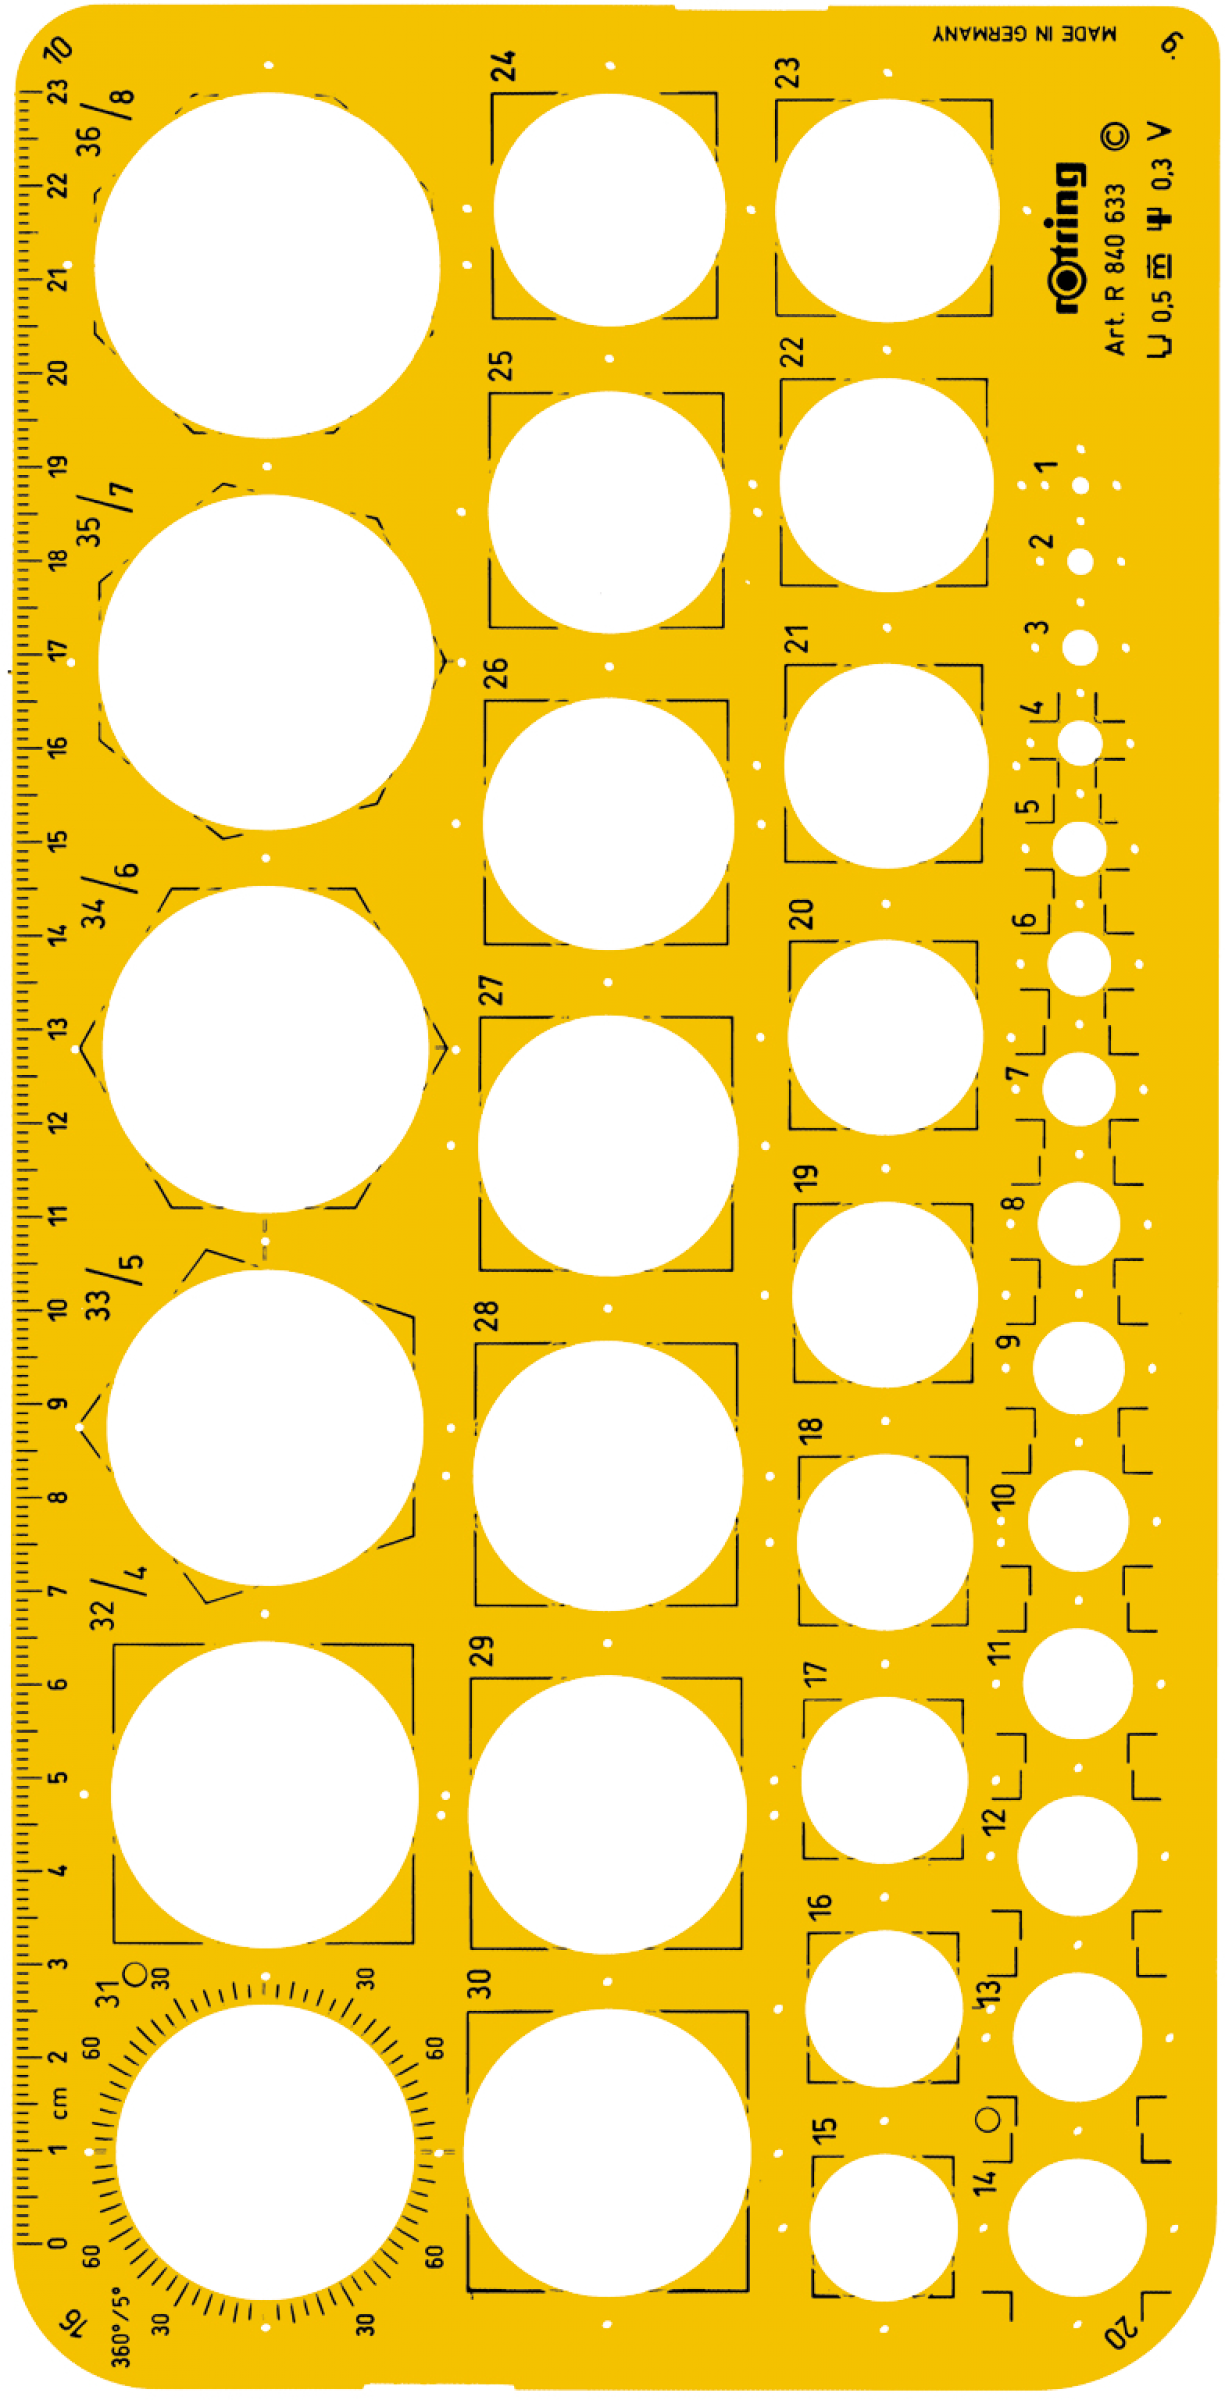 SABLON ROTRING CERCURI 1-36 mm, S0221691